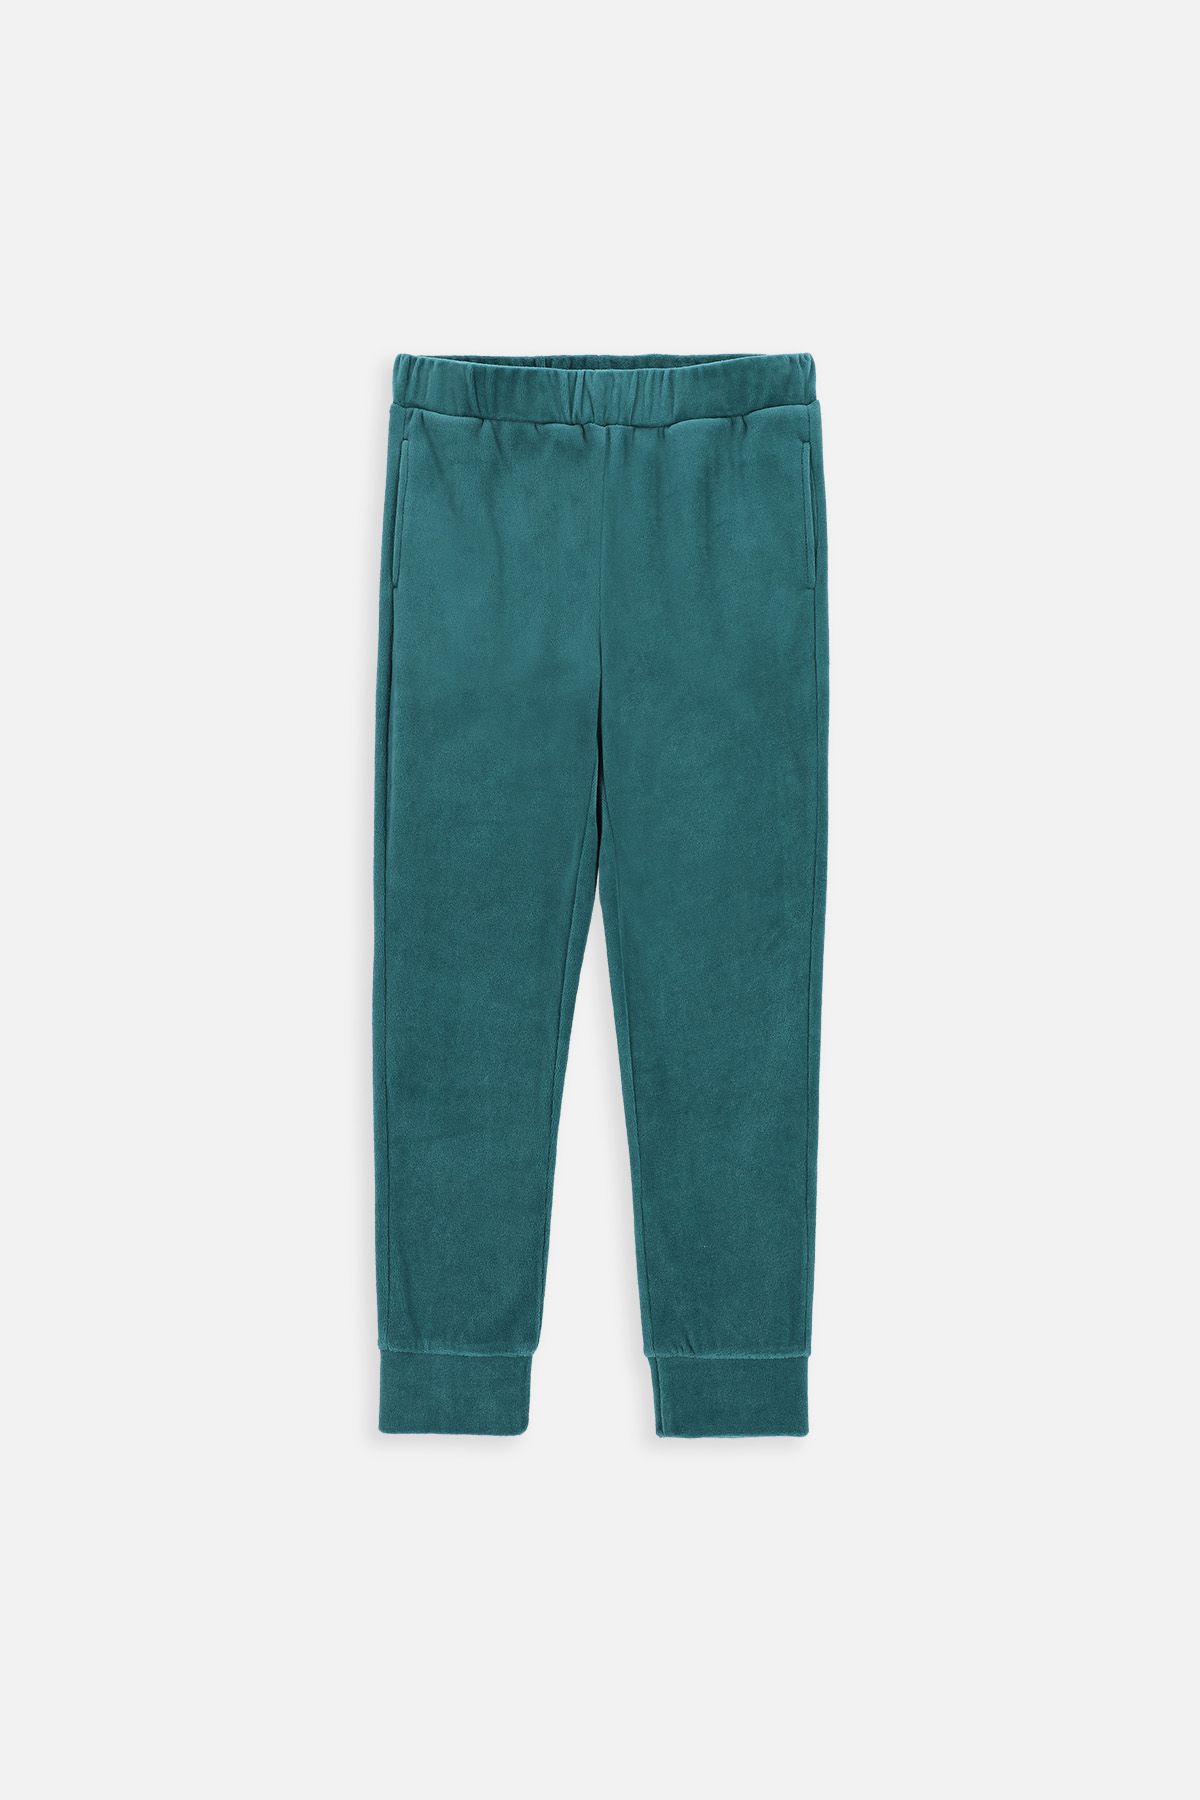 Spodnie dresowe zielone gładkie z kieszeniami 2221052